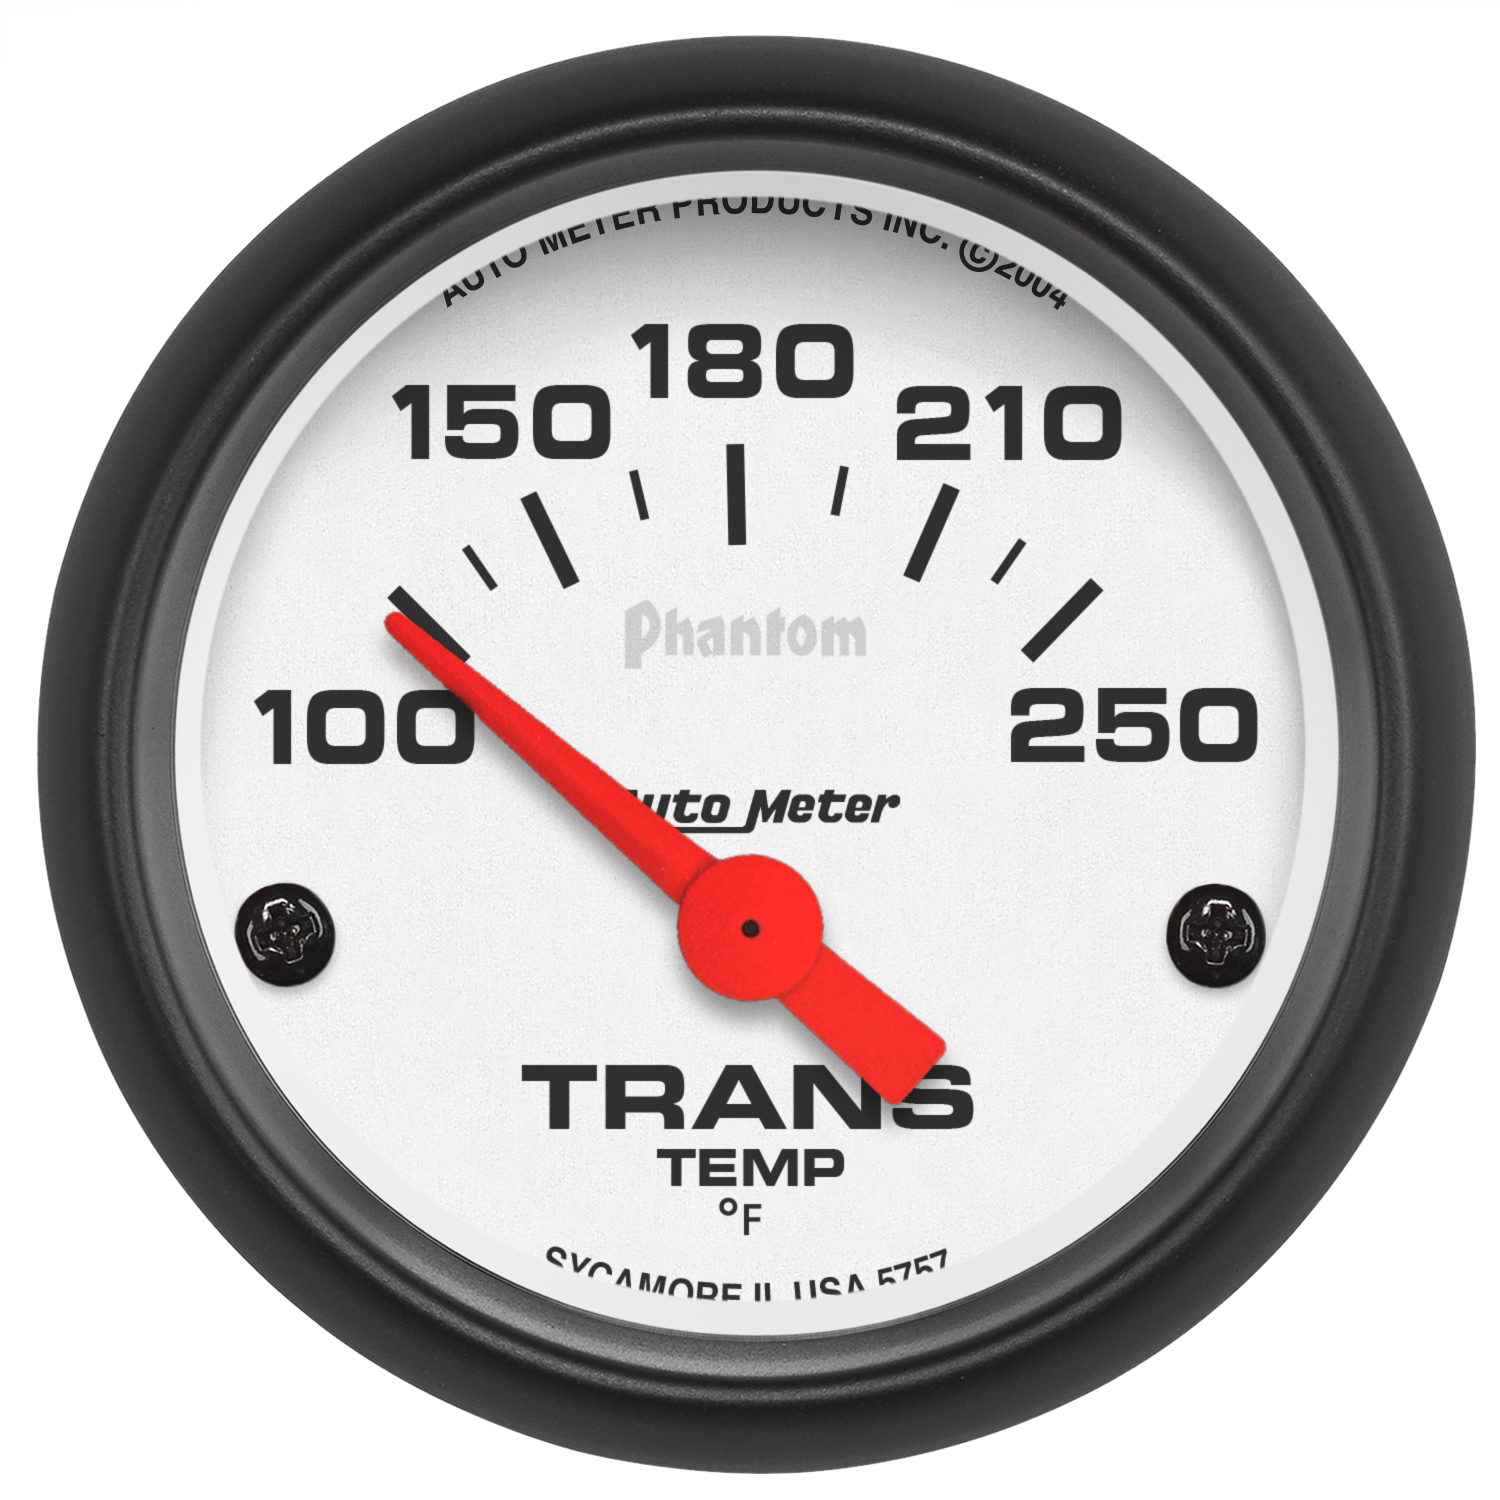 Auto Meter 5757 Electric Transmission Temperature Gauge 